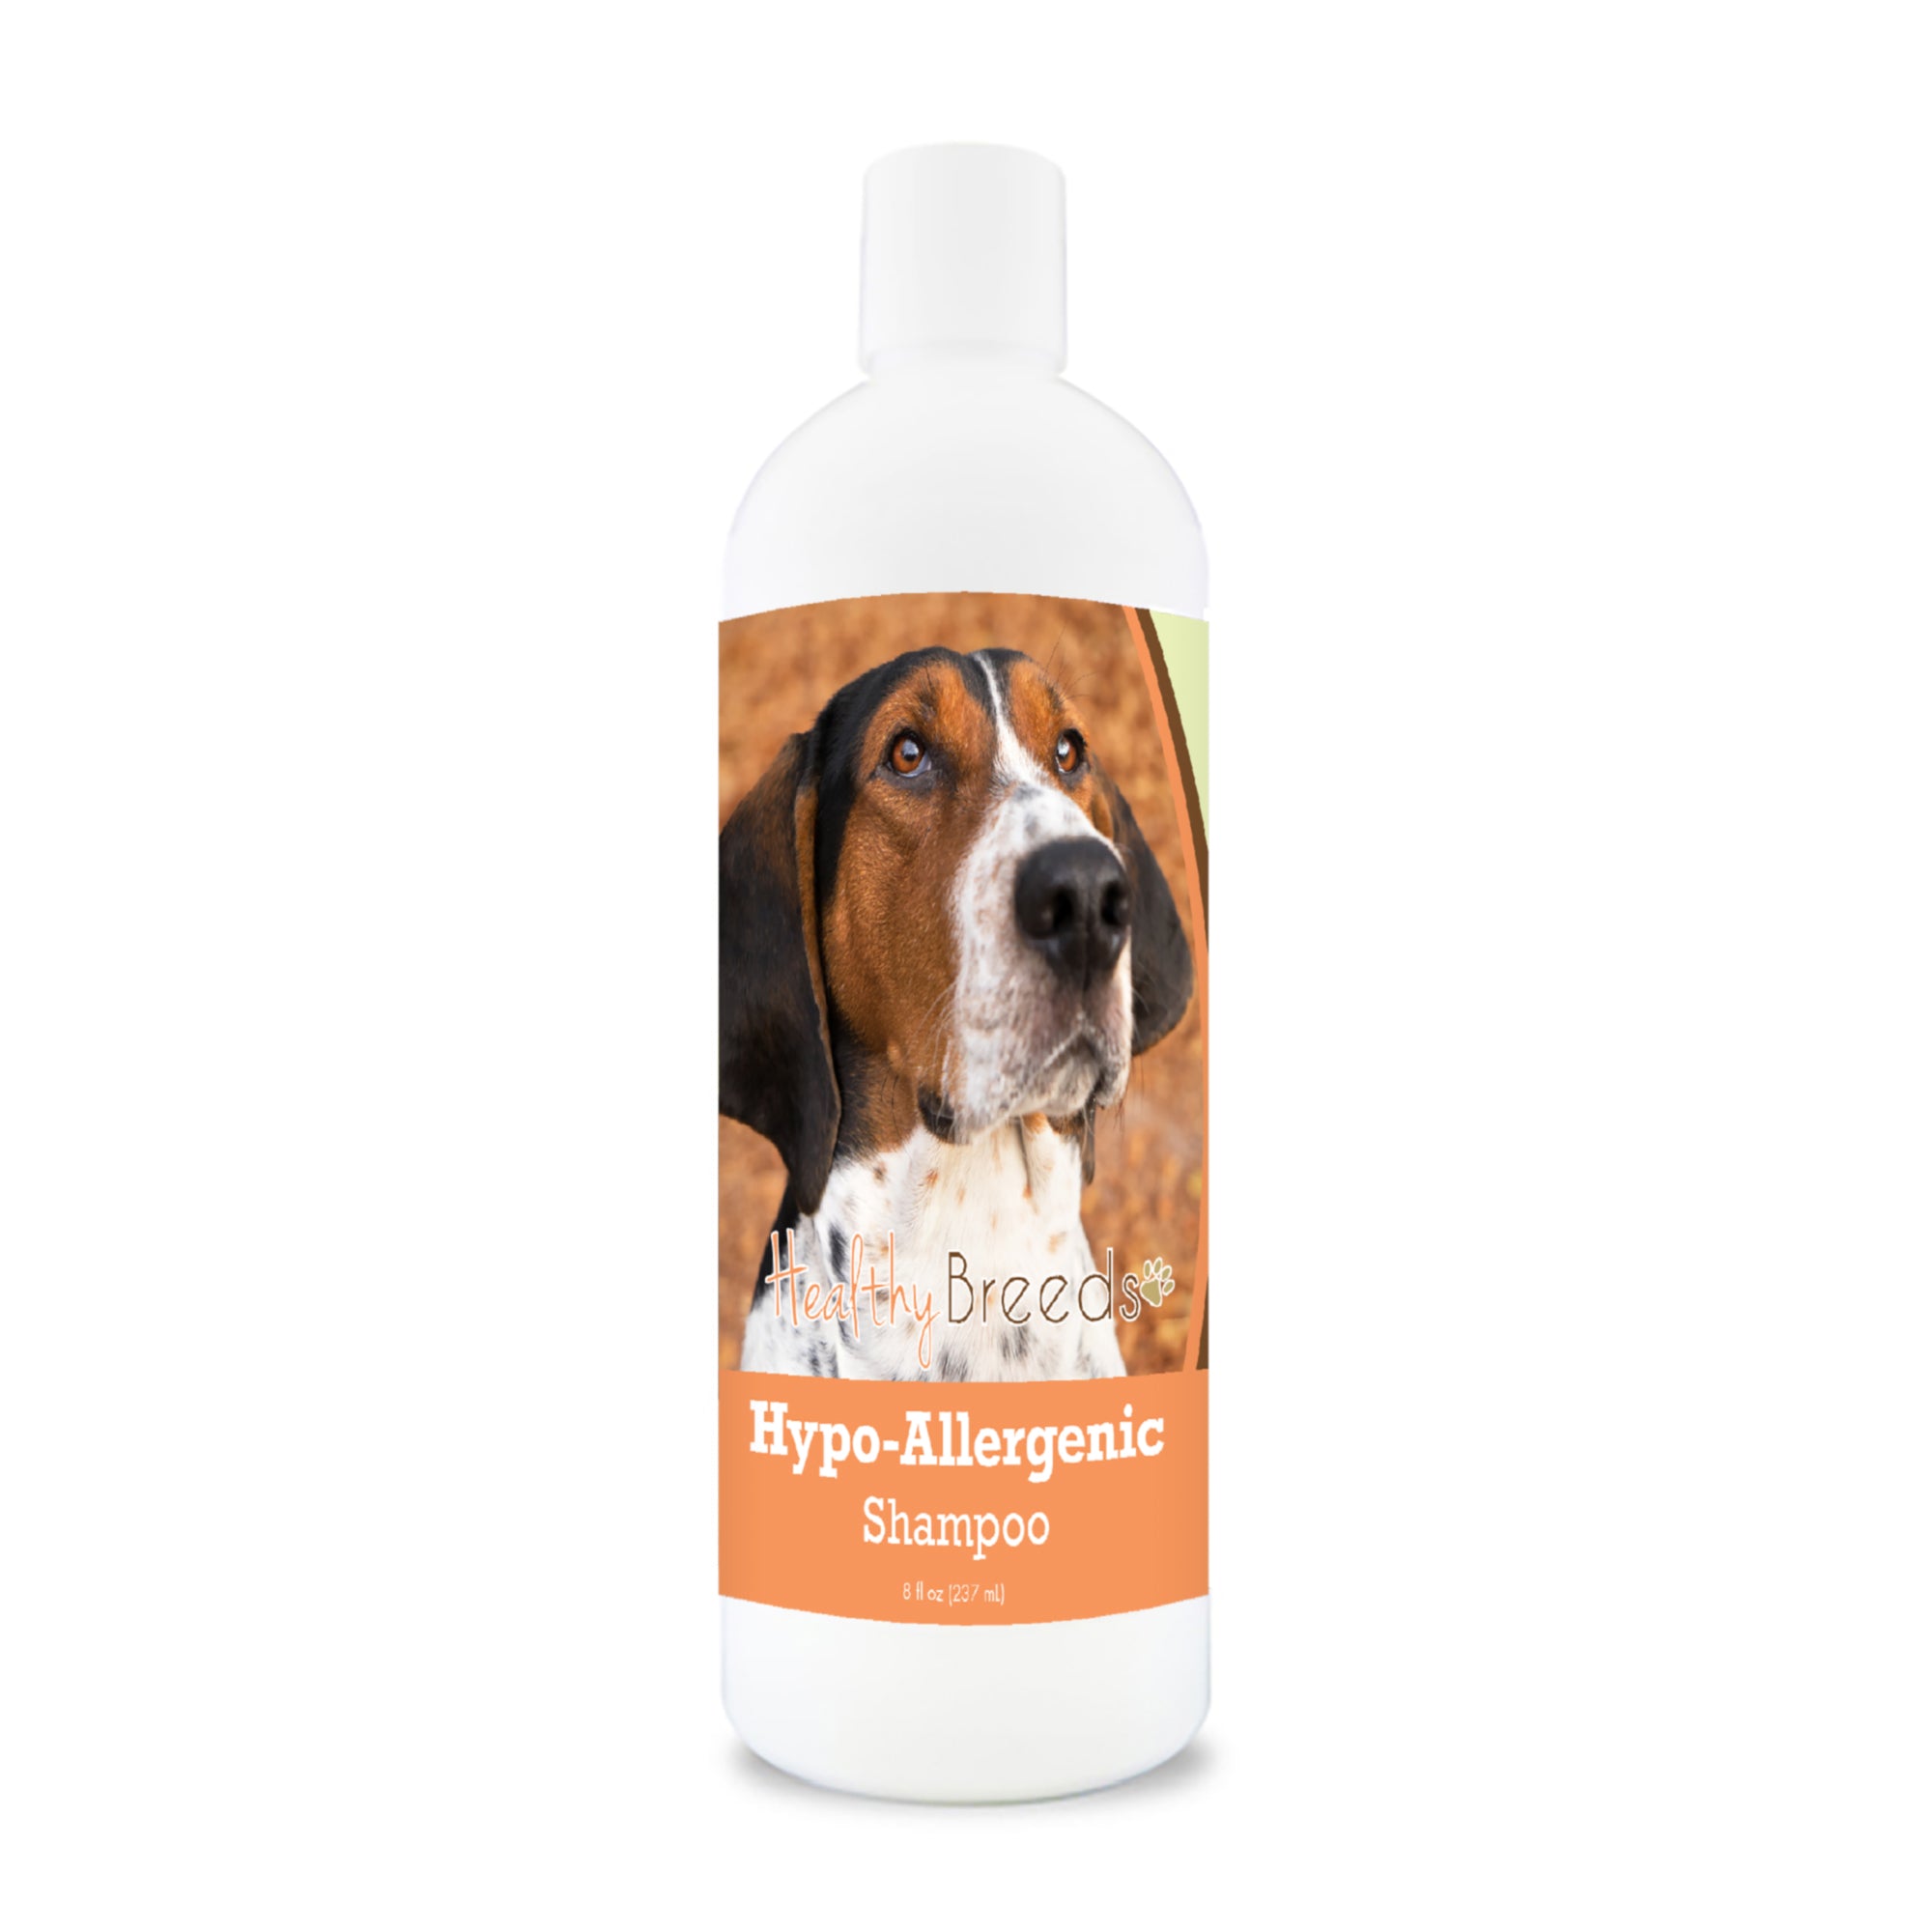 Treeing Walker Coonhound Hypo-Allergenic Shampoo 8 oz